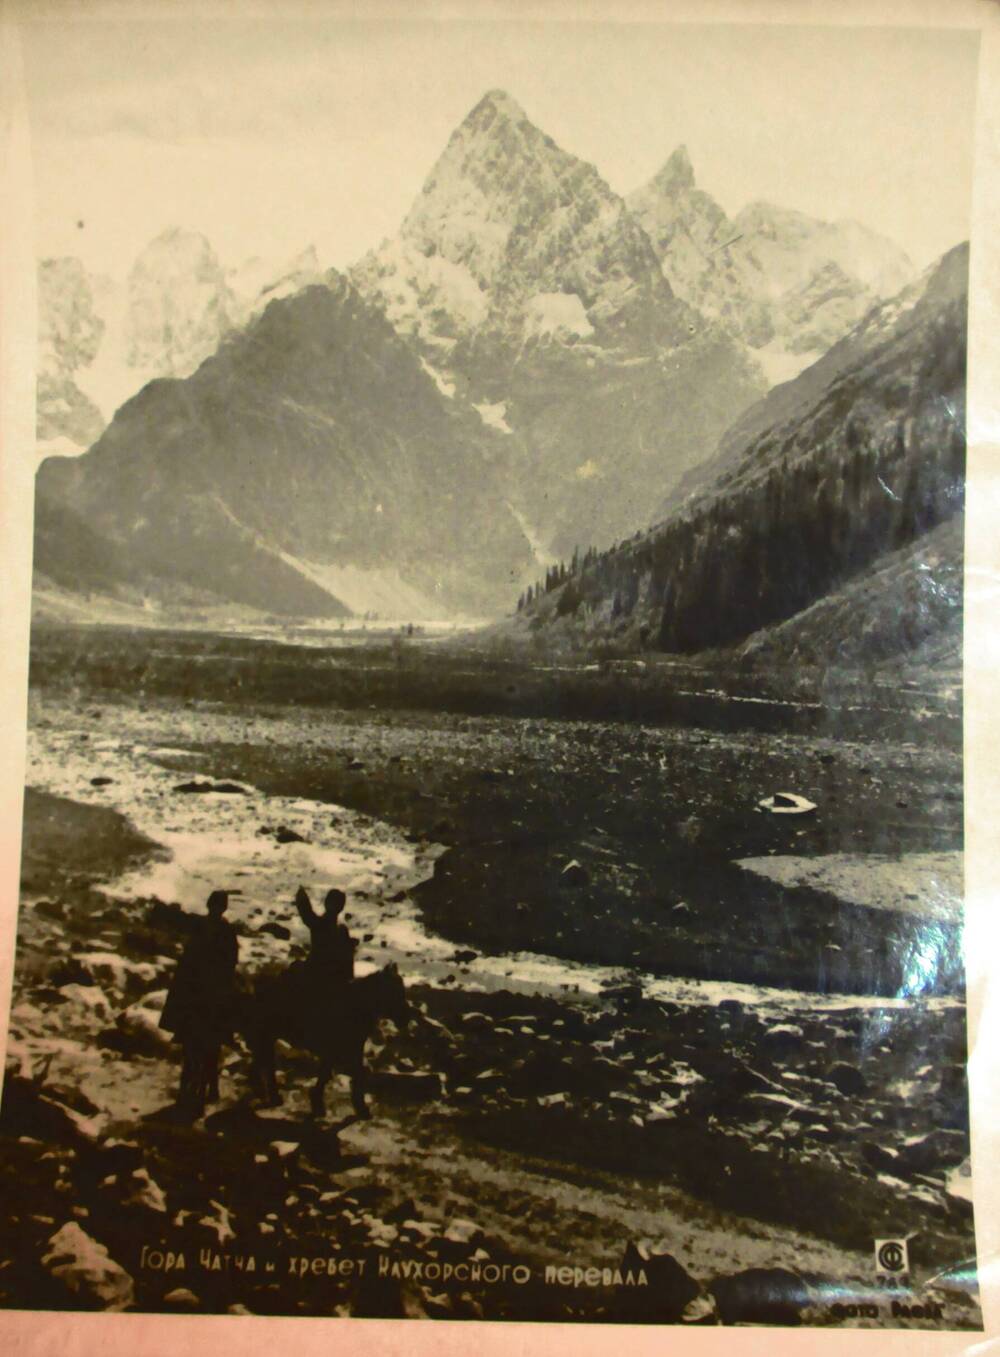 Фотография. Гора Чатча и хребет Клухорского перевала.